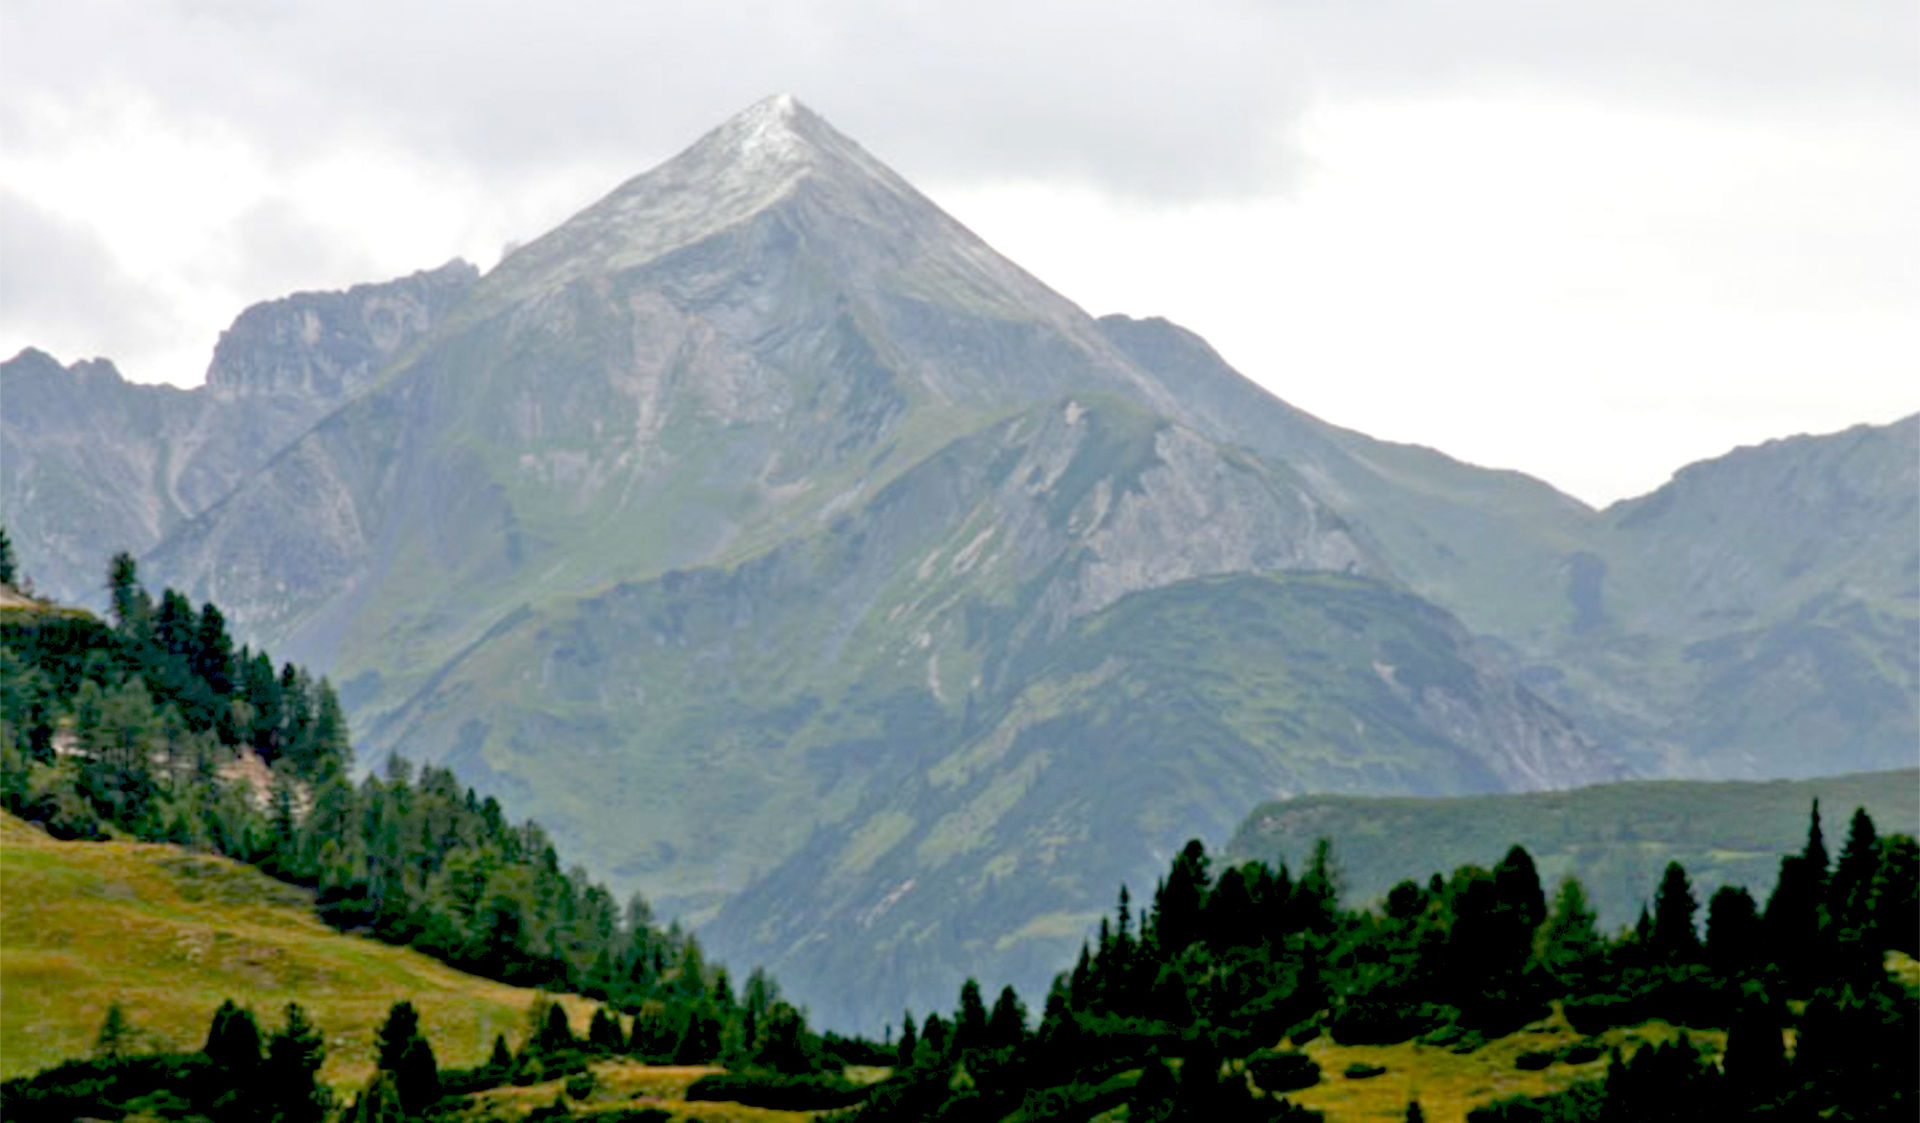 Vakantiehuis Meilinger in Obertauern – bergen in de omgeving